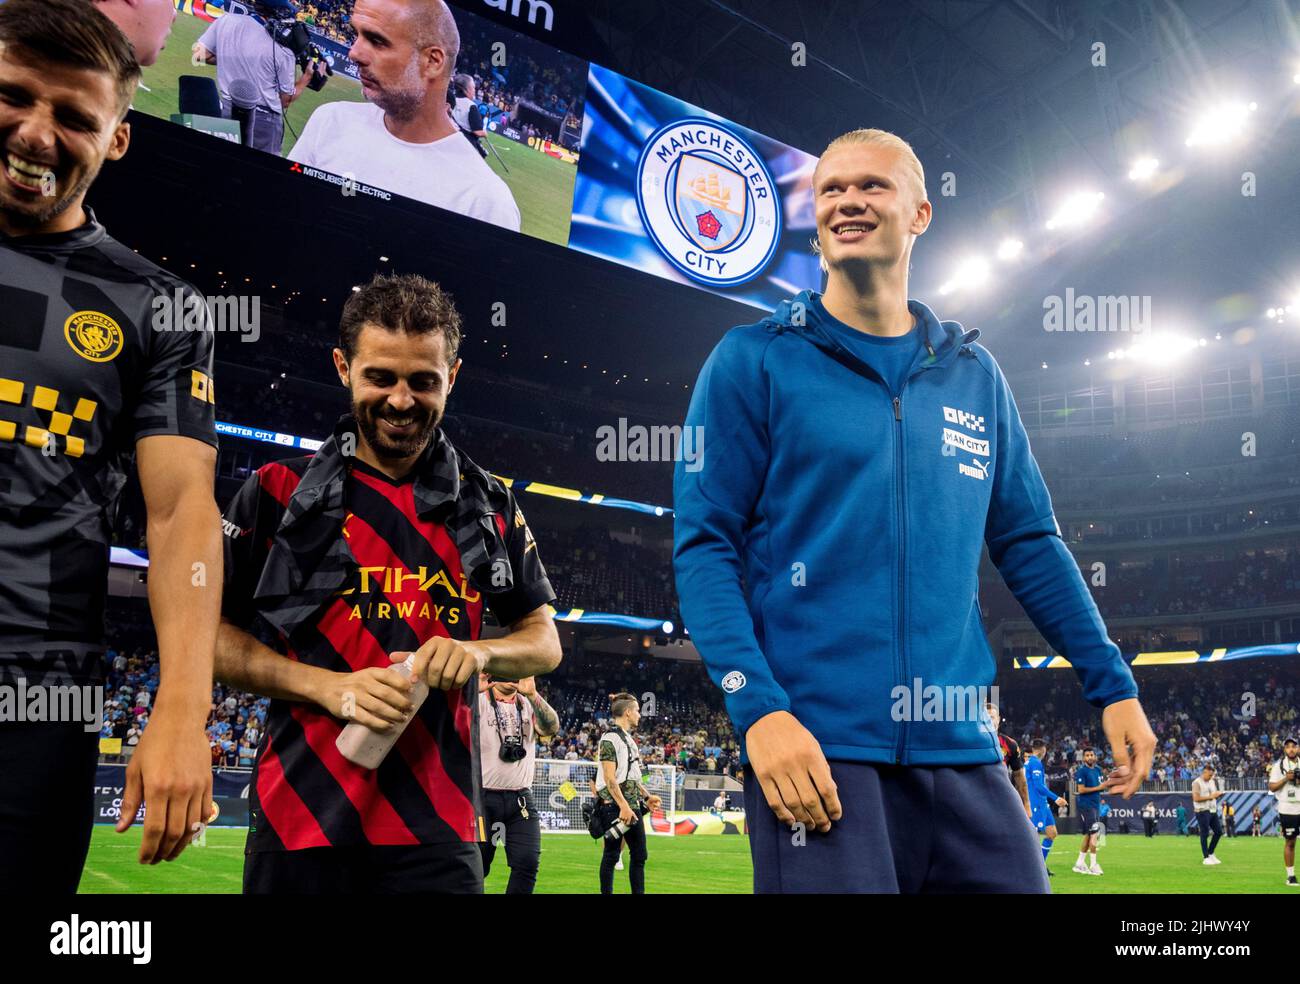 Erling Haaland, del Manchester City, tras un partido amistoso de la pre-temporada en el NRG Stadium, Houston. Fecha de la foto: Miércoles 20 de julio de 2022. Foto de stock